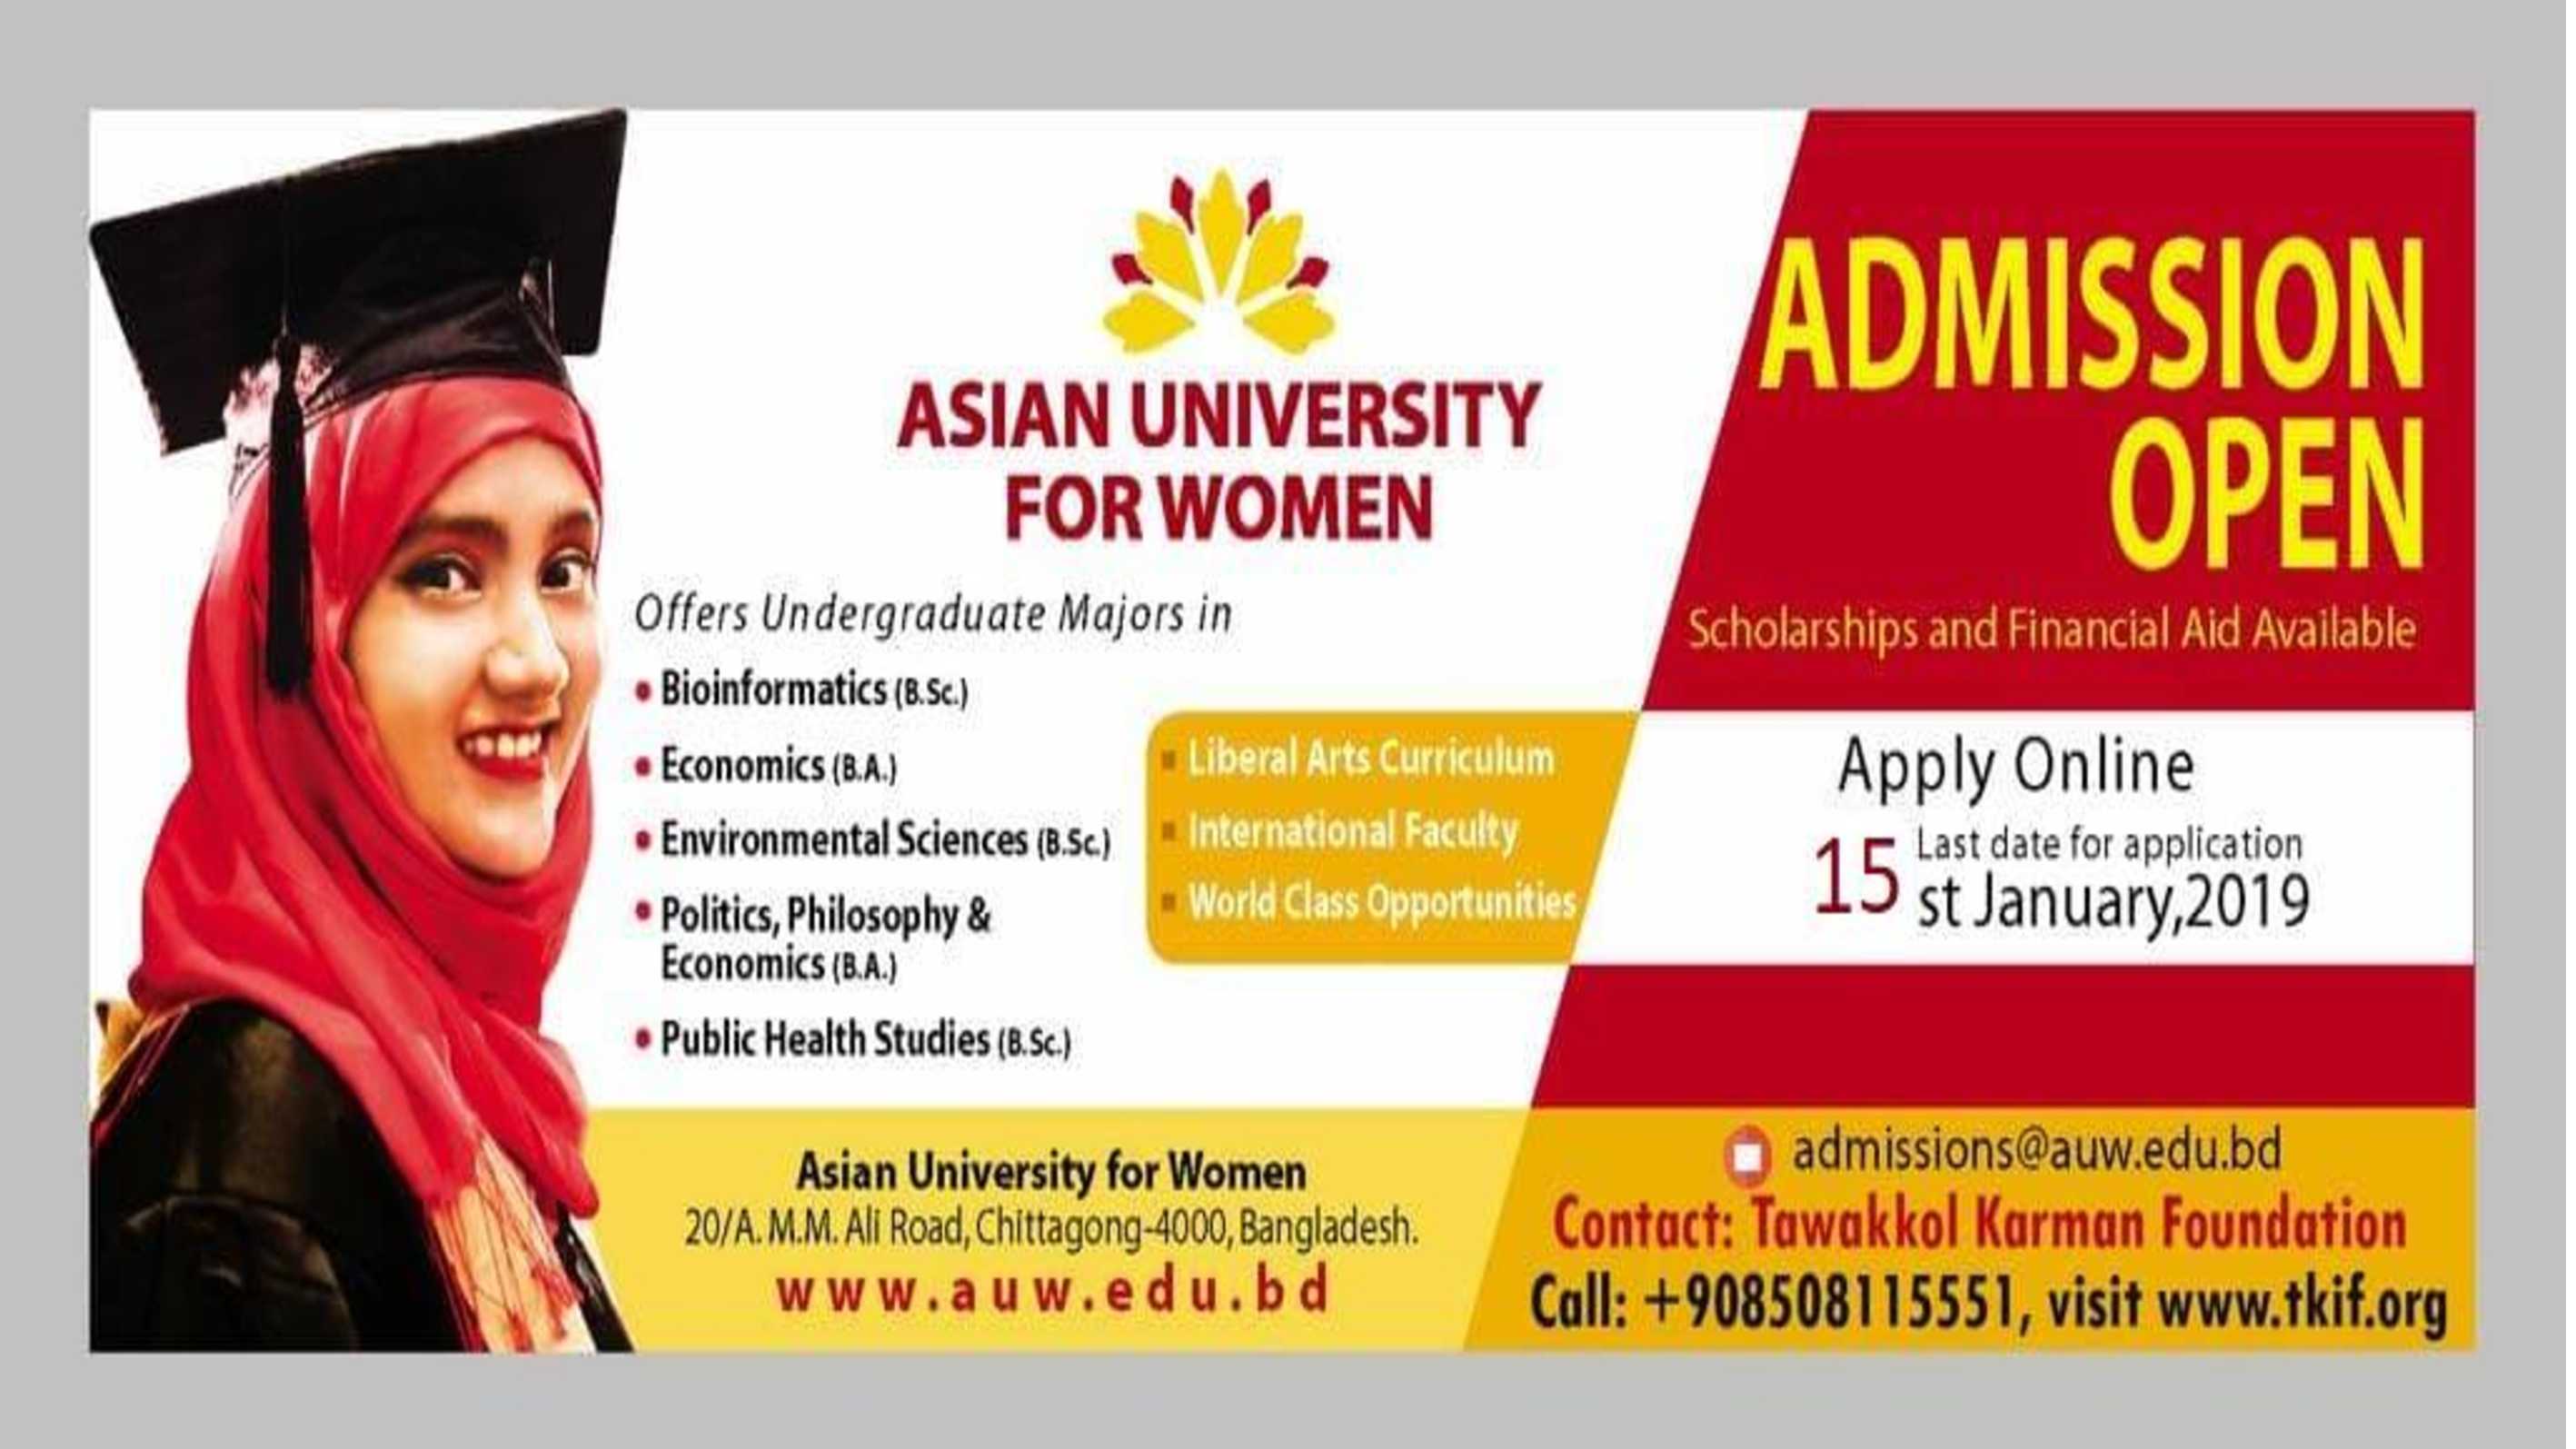 مؤسسة توكل كرمان تعلن عن توفير 50 منحة دراسية لخريجات الثانوية في الجامعة الآسيوية للنساء